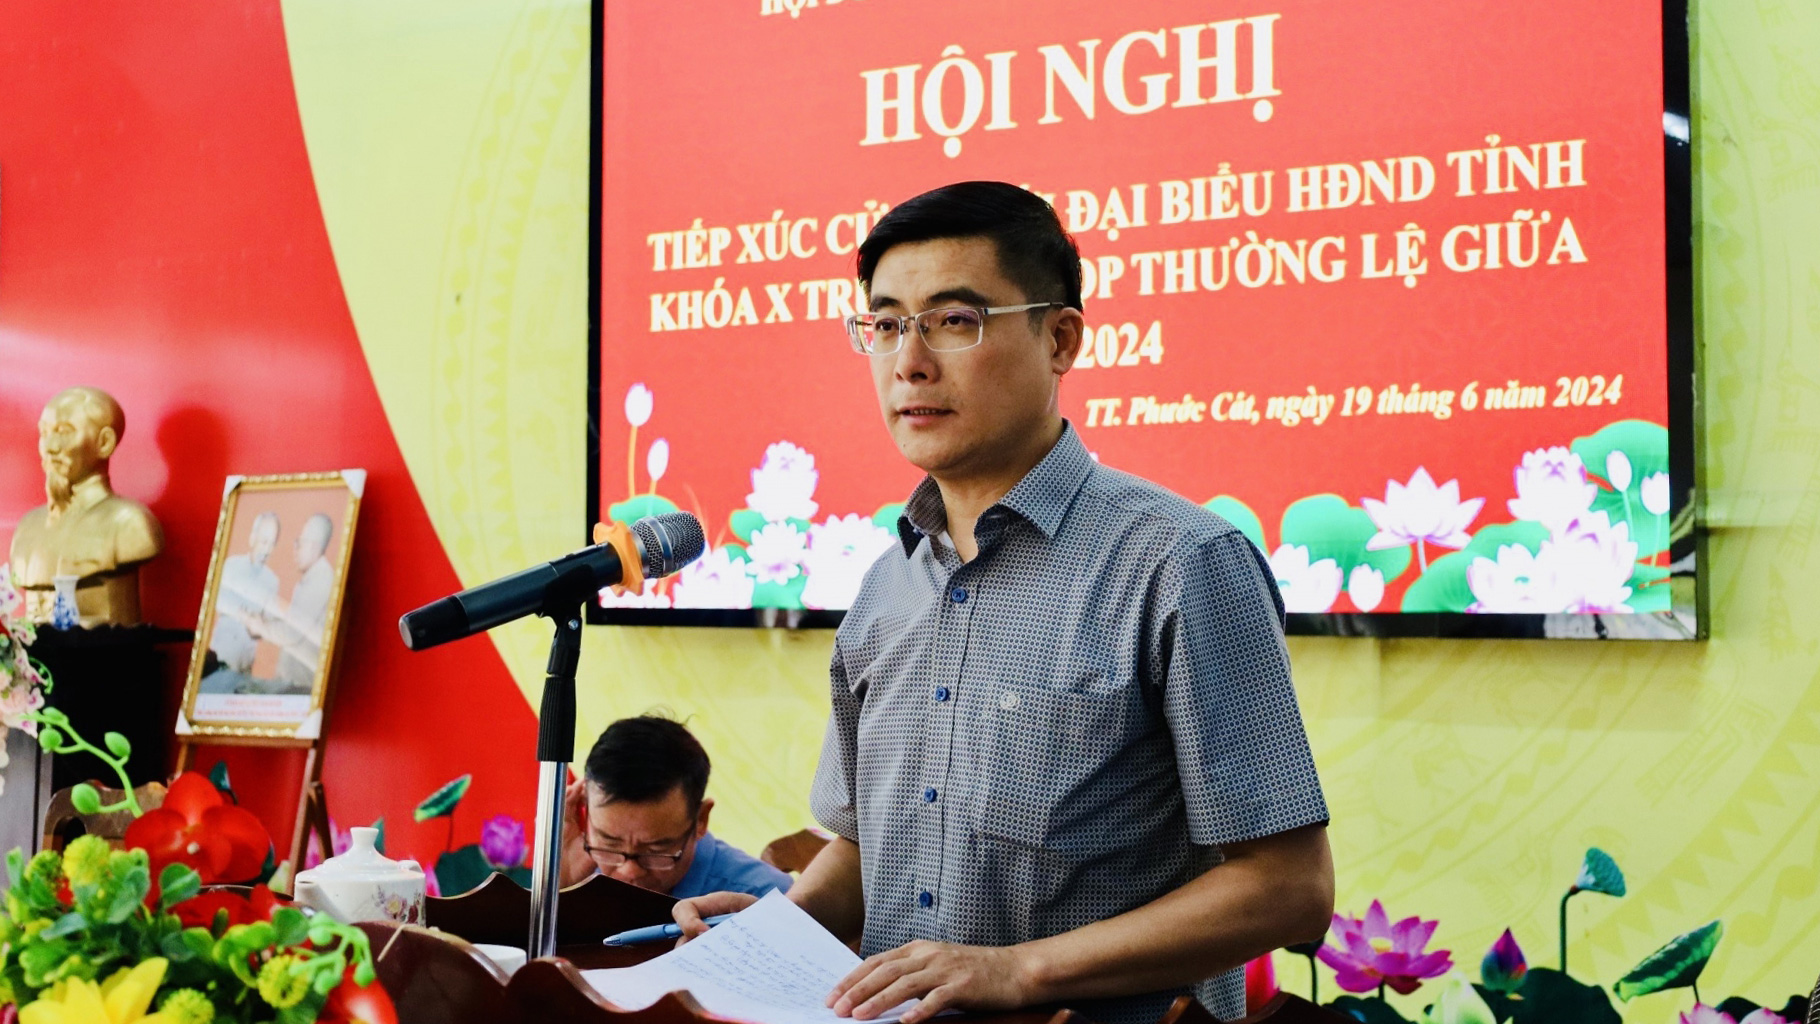 Đại biểu HĐND tỉnh tiếp xúc cử tri Cát Tiên trước kỳ họp thường lệ giữa năm